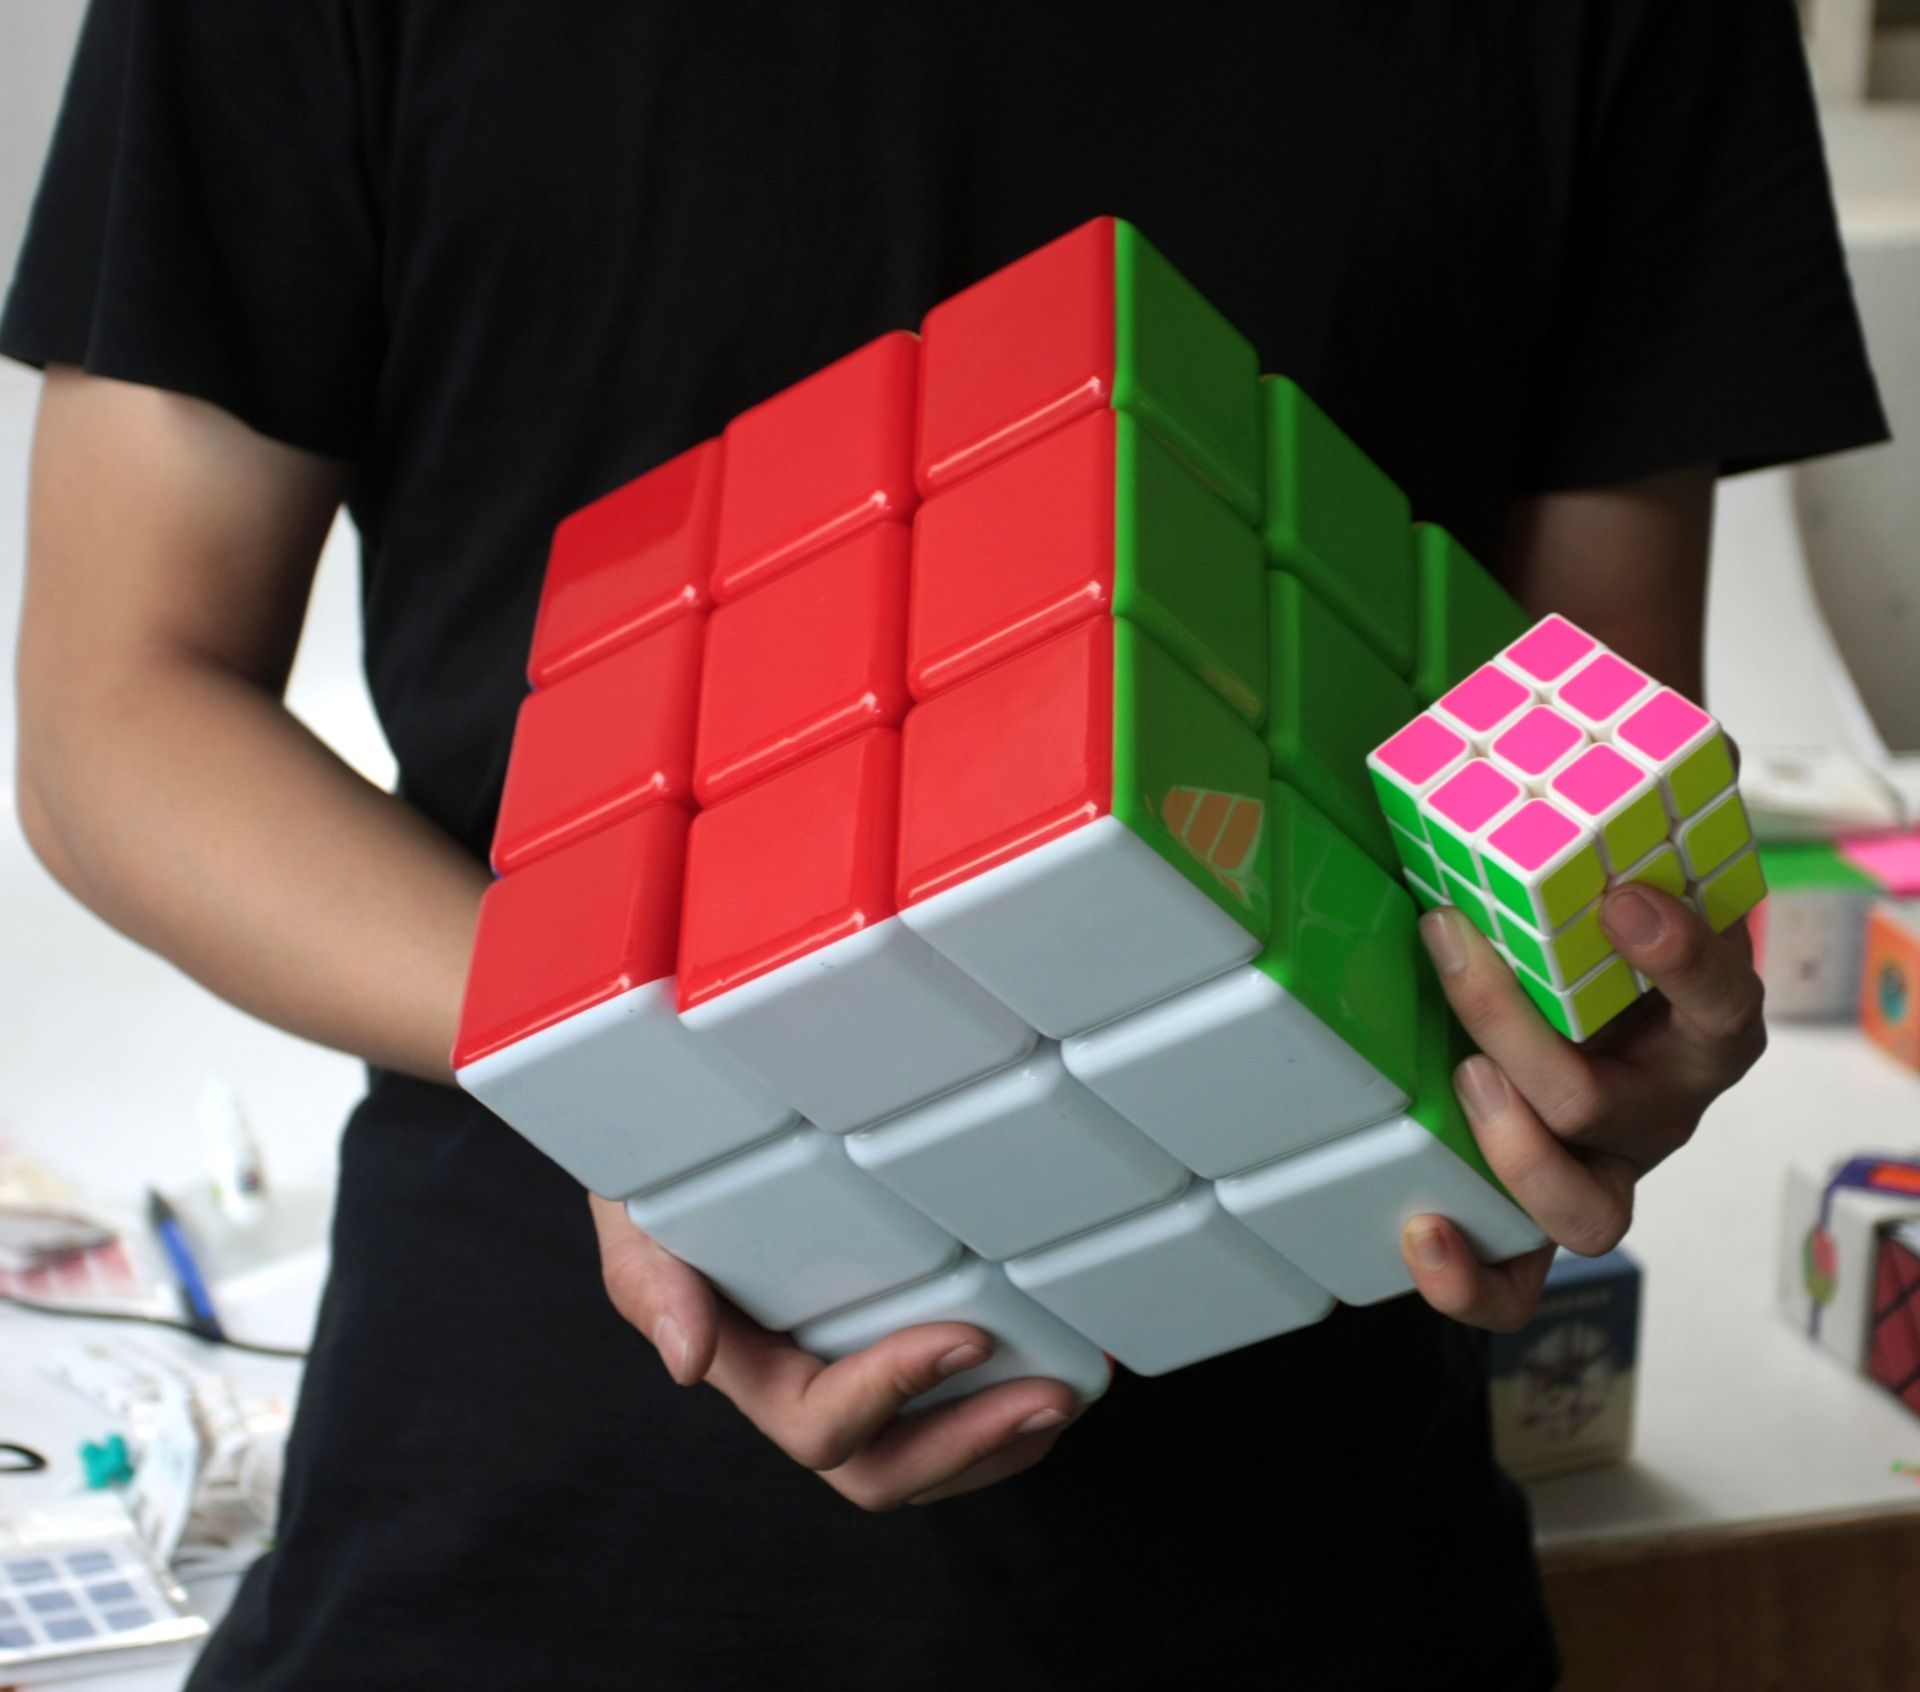 Cubo Mágico 3x3x3 Gigante - 18 CM - Oncube: os melhores cubos mágicos você  encontra aqui